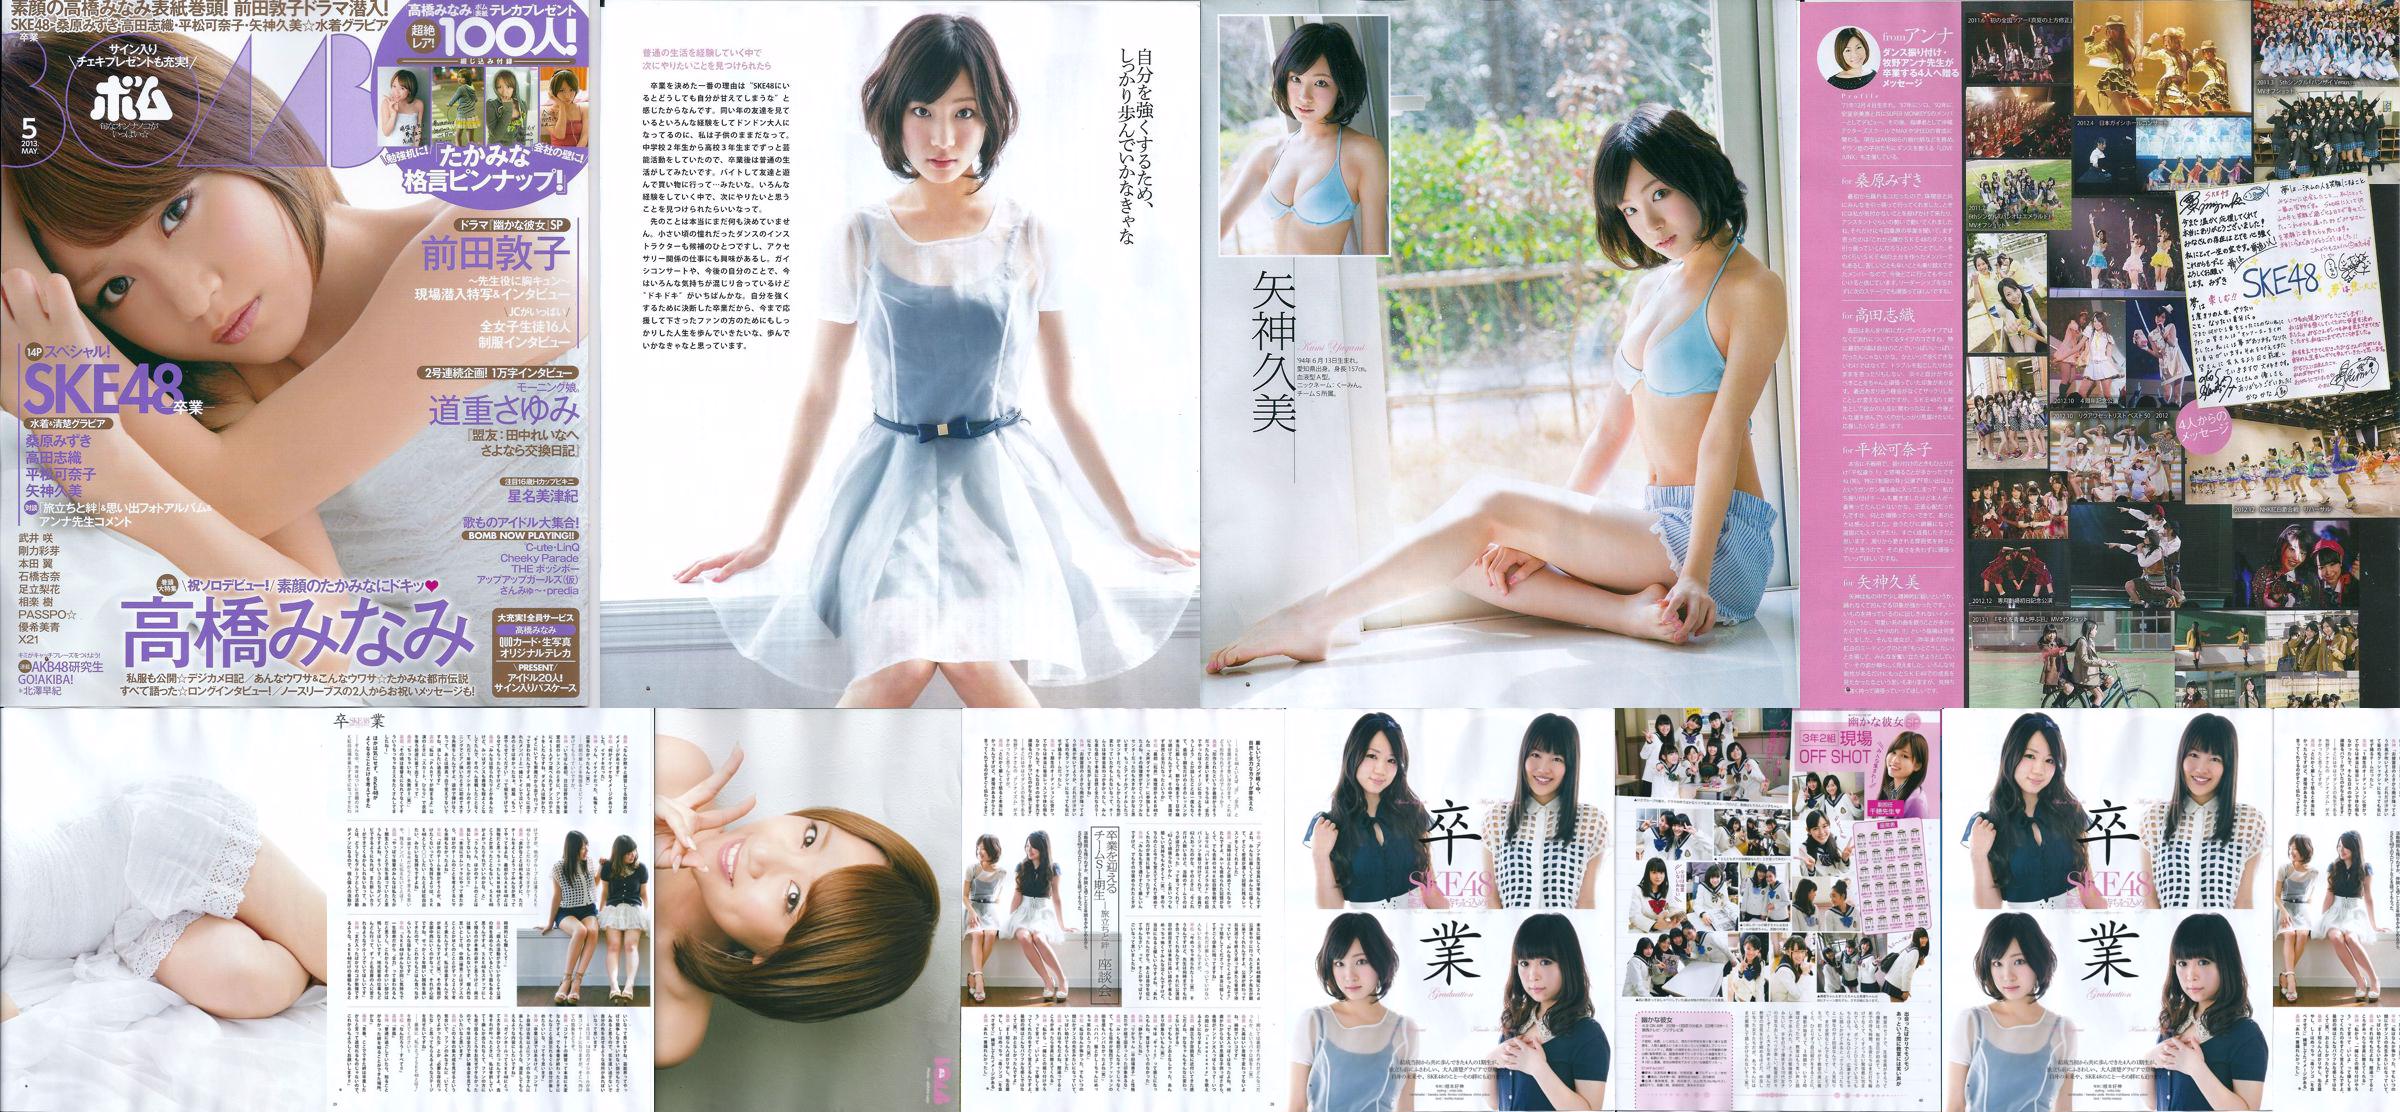 [Bomb Magazine] 2013 No.05 Kumi Yagami Minami Takahashi Atsuko Maeda Photo No.e891ab Pagina 3